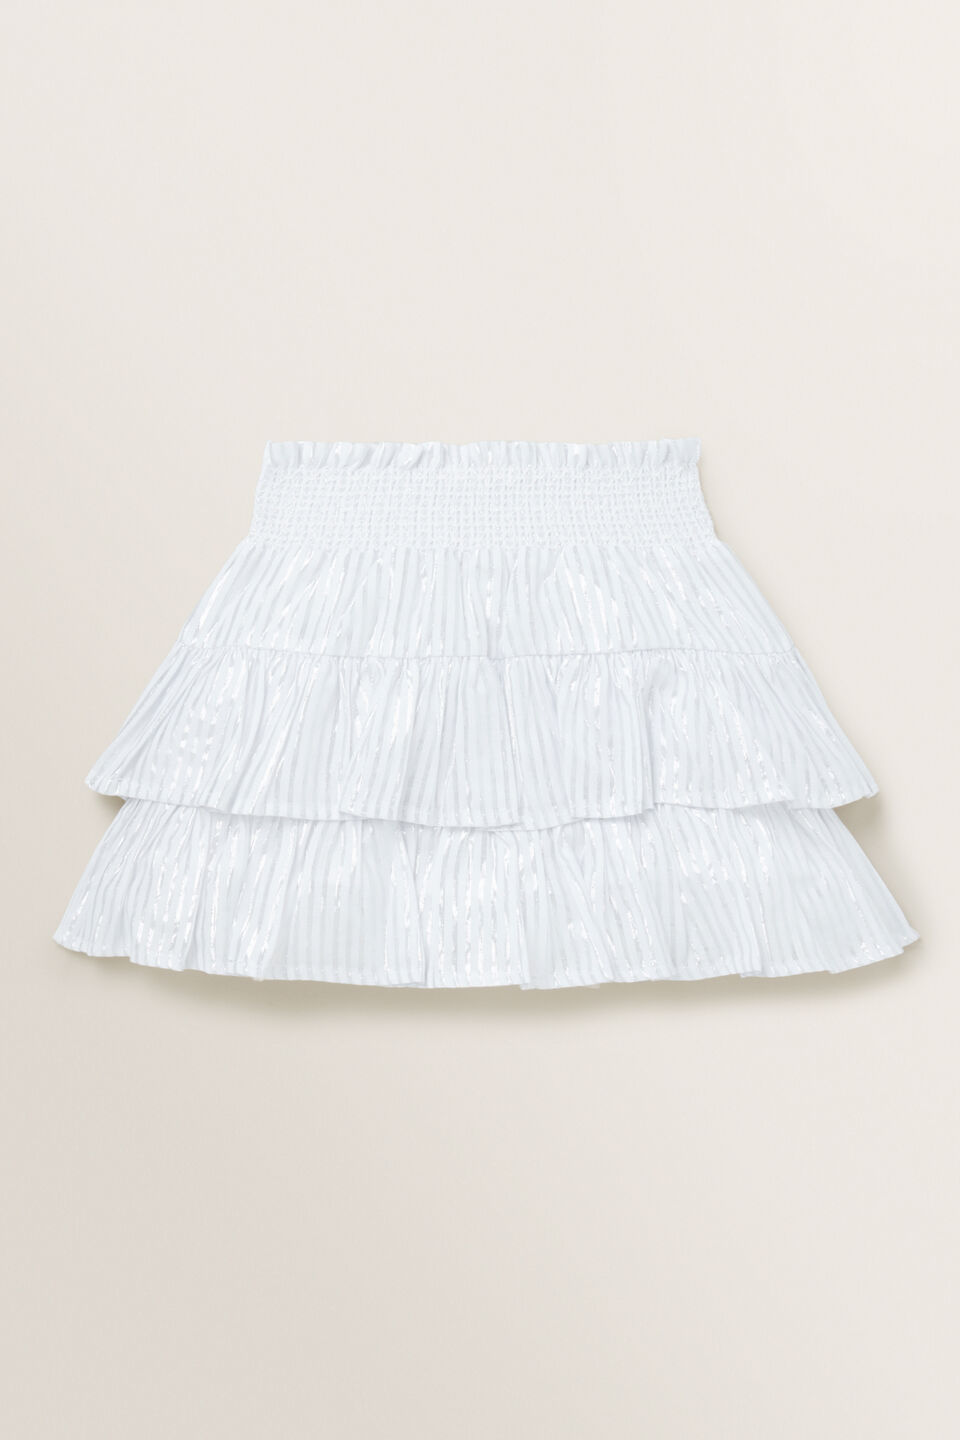 Metallic Skirt  White Silver